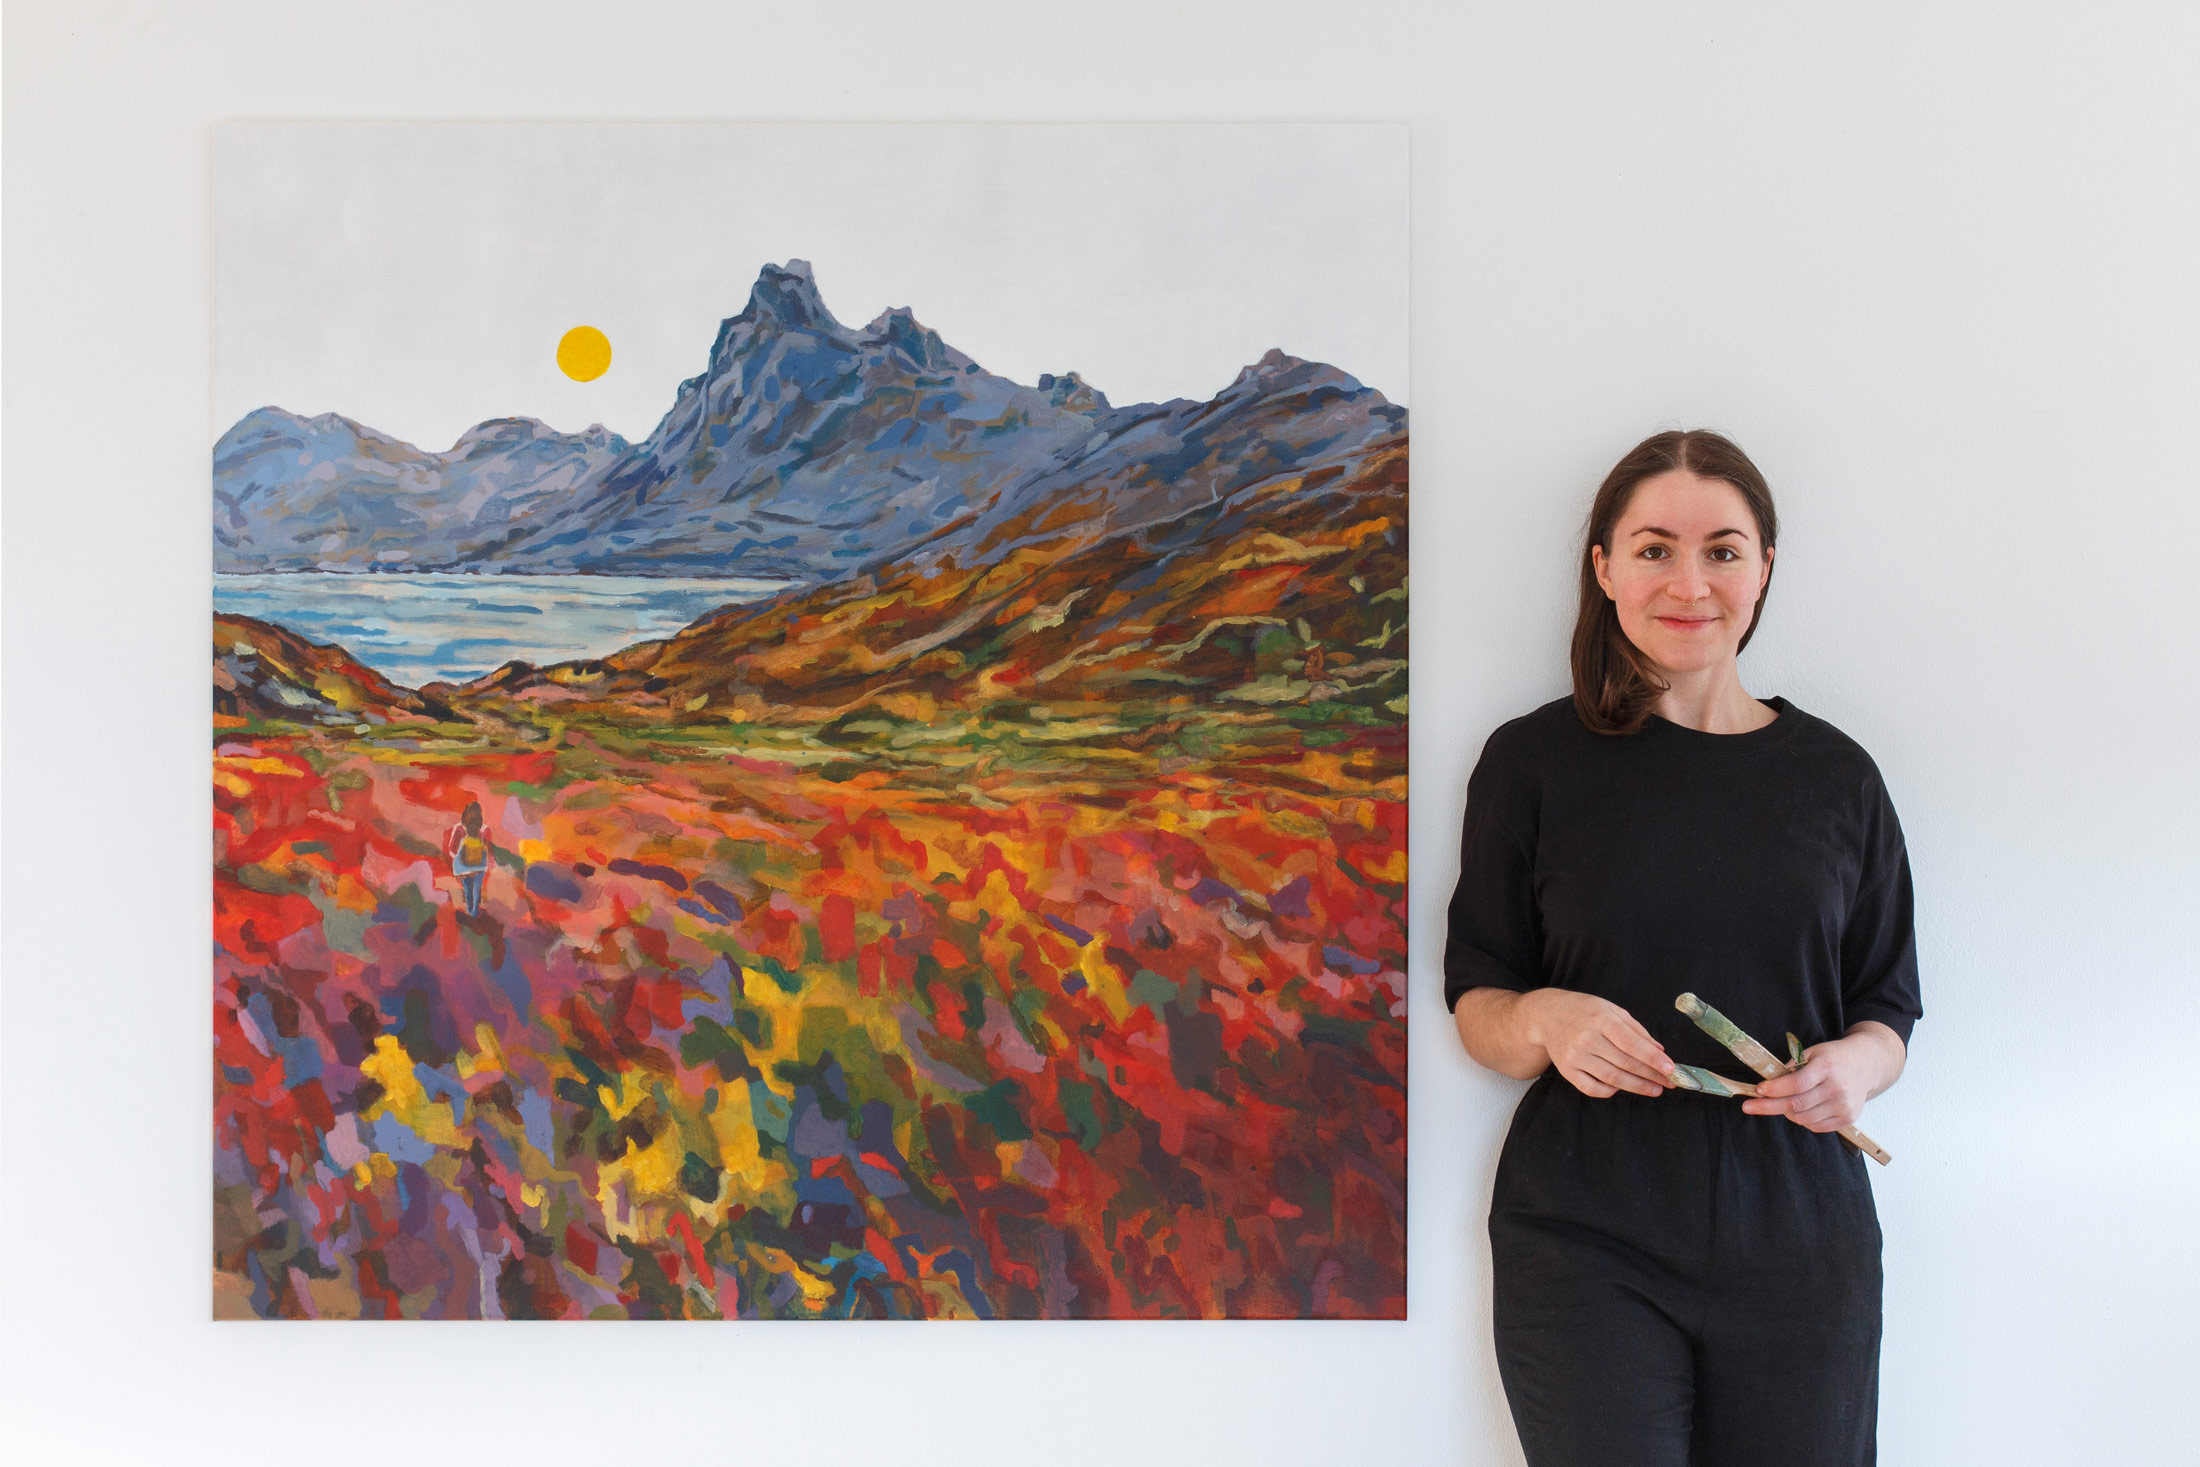 Die Künstlerin und Malerin Anja Dommel steht neben einem XXL Gemälde vom Eystrahorn in Island als Sehnsuchtsort in Acryl